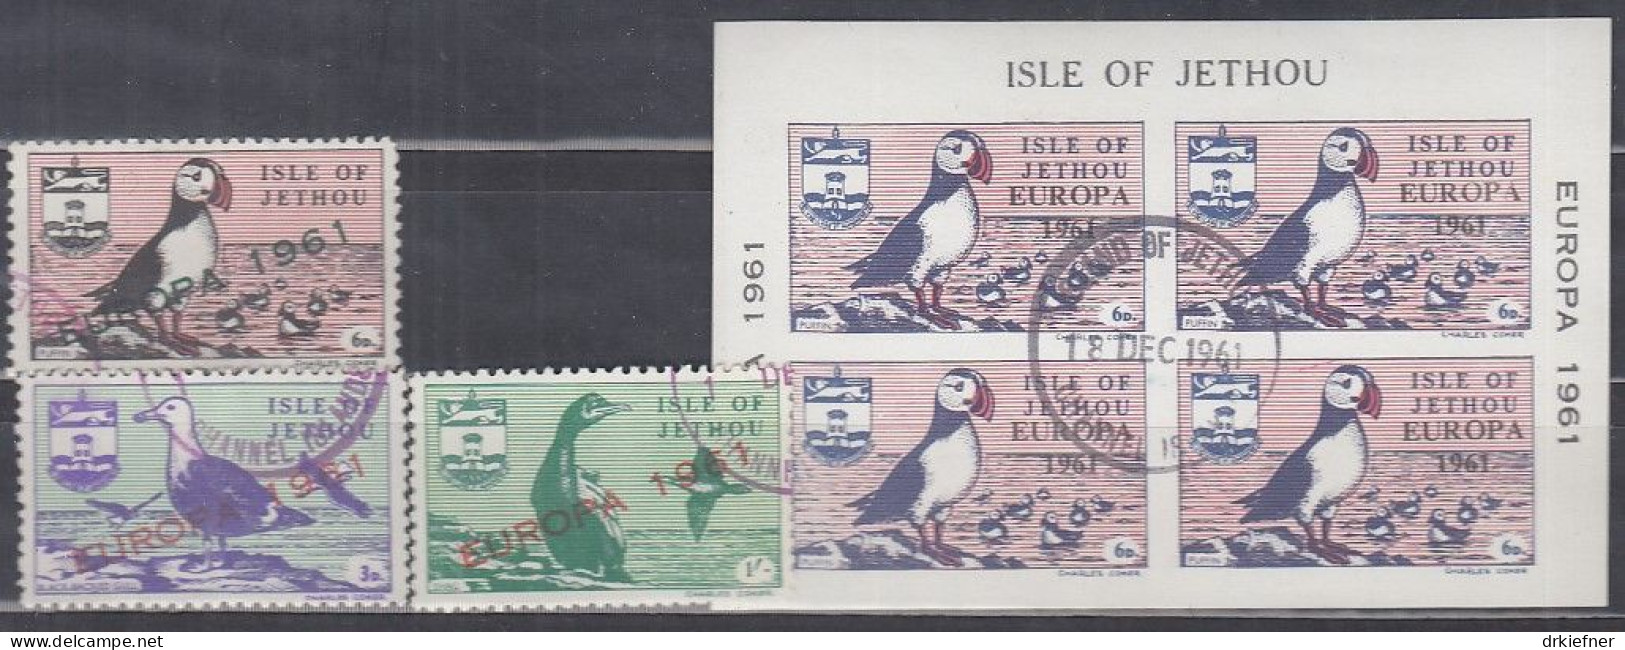 INSEL JETHOU (Guernsey), Nichtamtl. Briefmarken, 1 Block + 3 Marken, Gestempelt, Europa 1961, Vögel - Guernesey